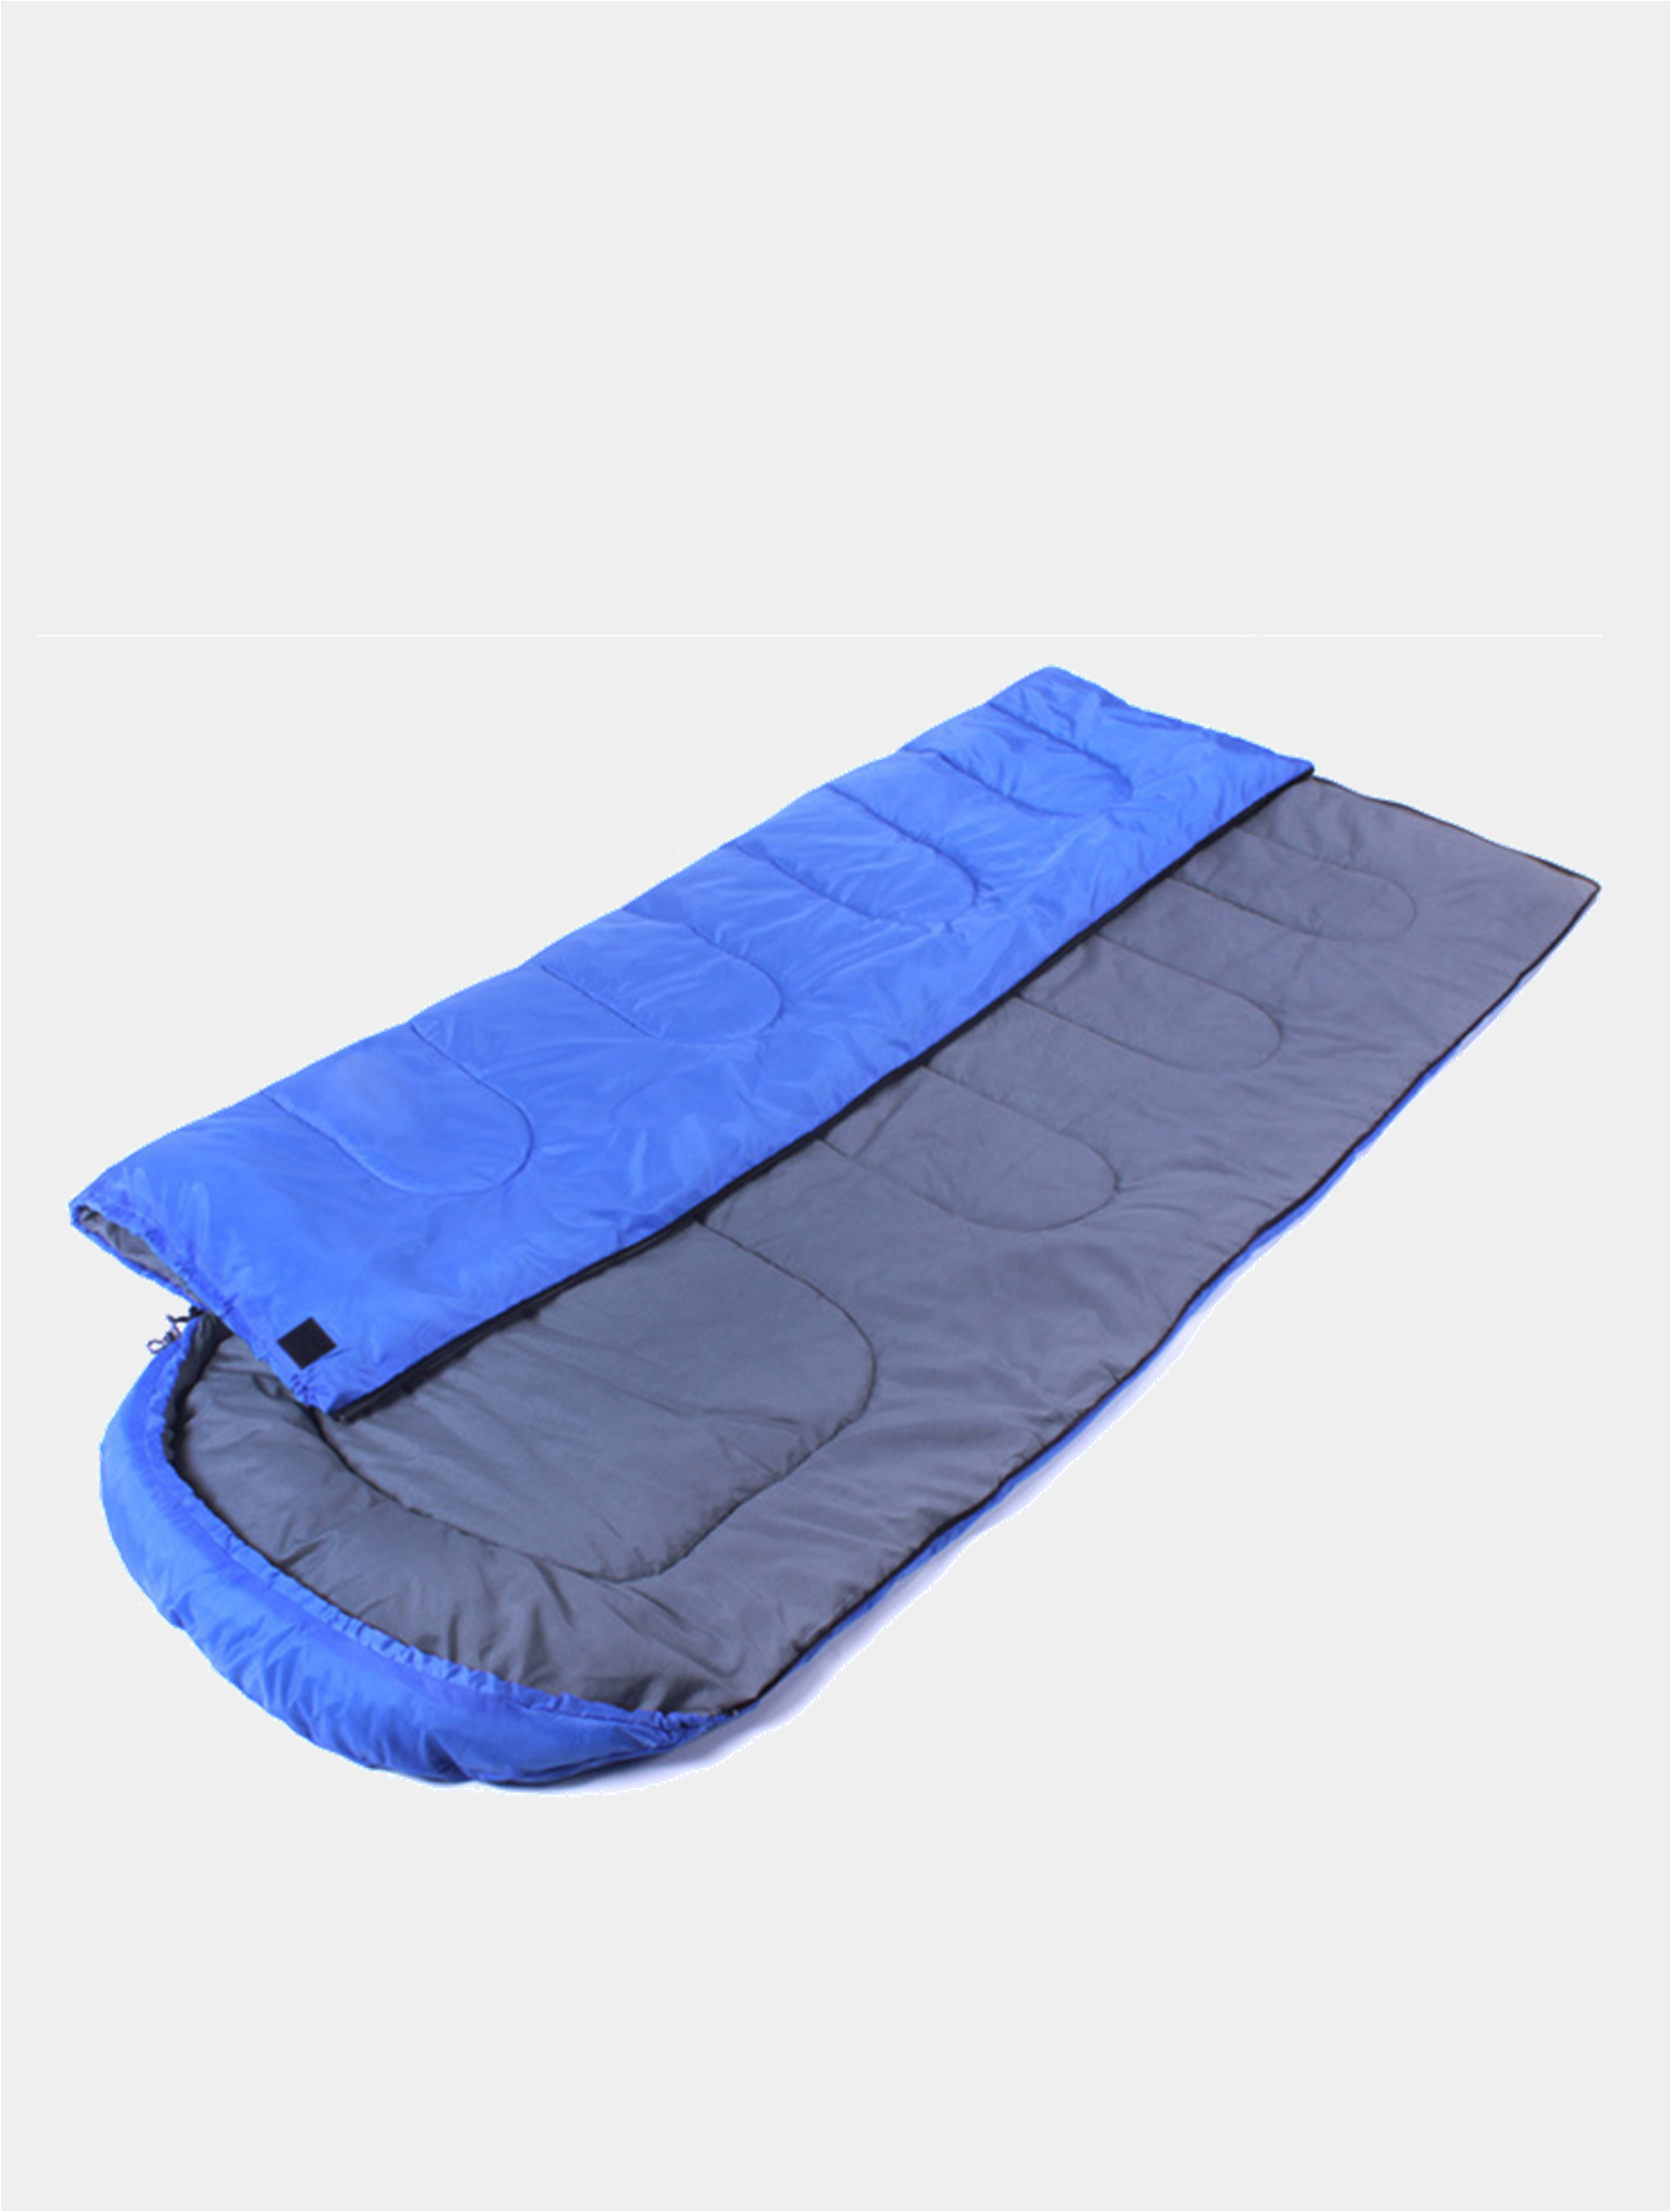 Спальный мешок camping. Спальный мешок. Одеяло для похода. Мешок для сна походный. Спальник конверт в палатку.